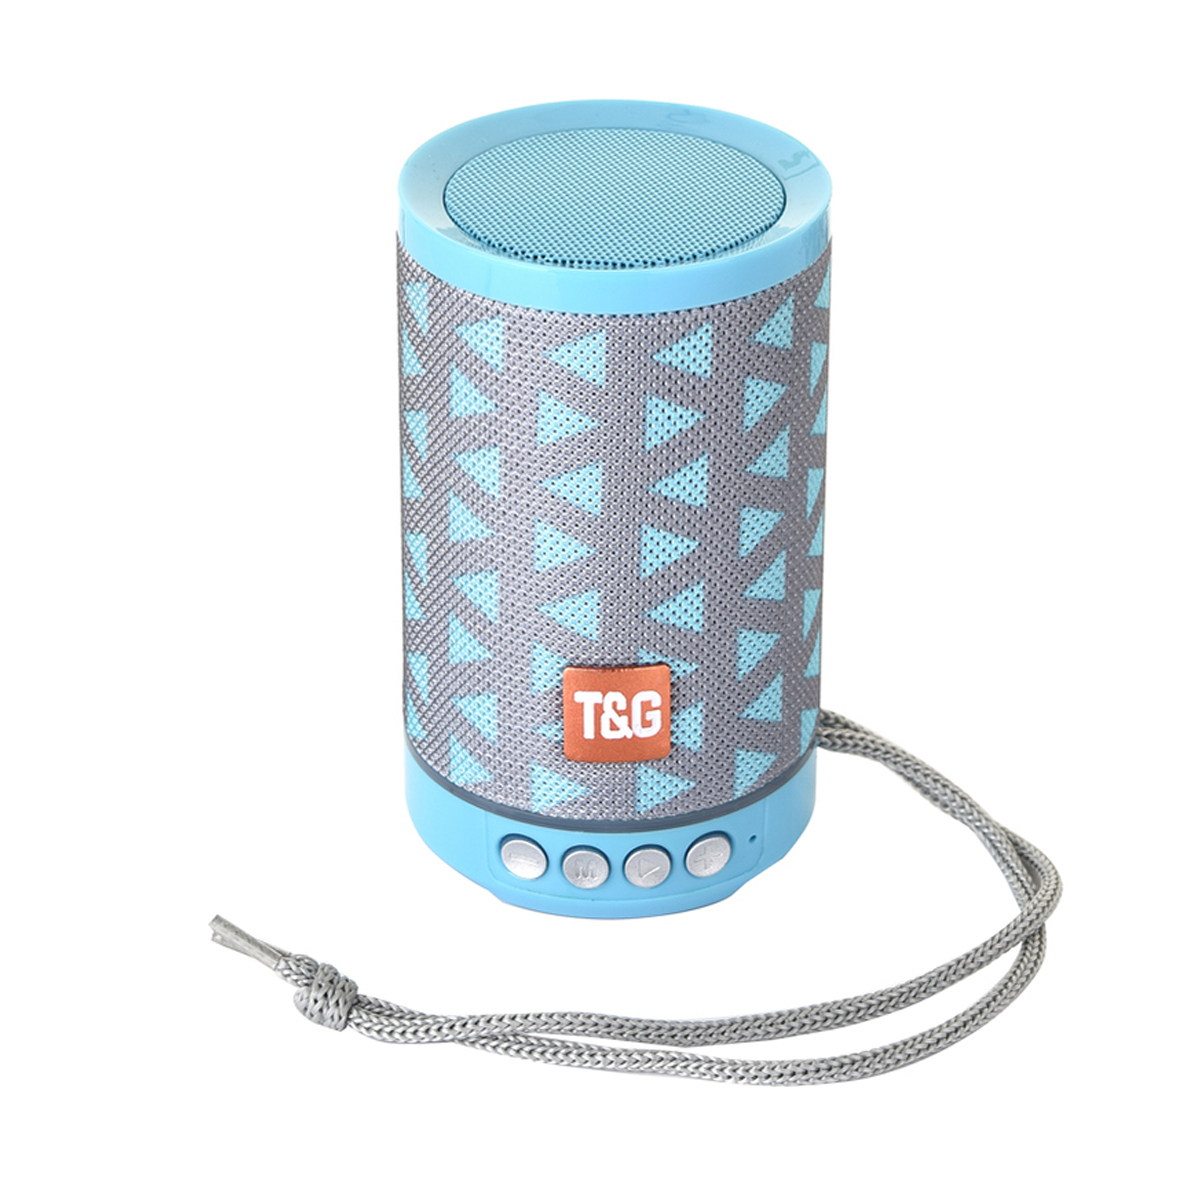 ลำโพงบลูทูธ TG525 Wireless Bluetooth Speaker